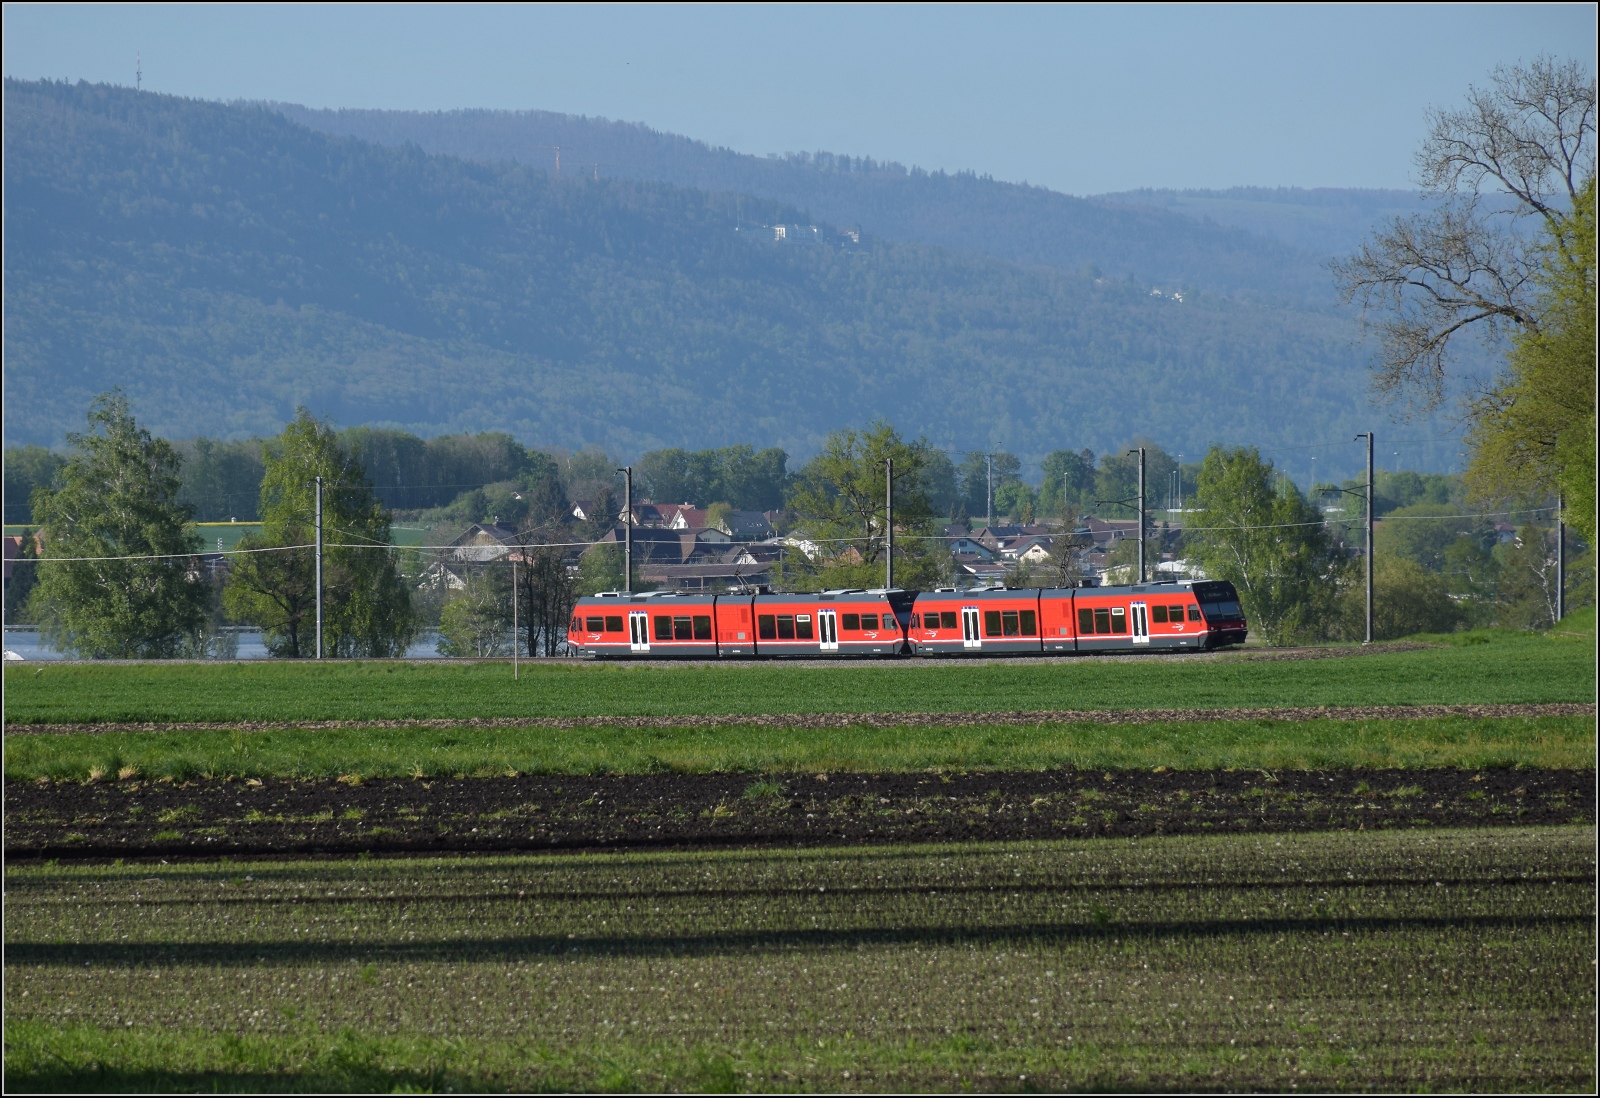 Auf der Biel-Täuffelen-Ins Bahn.

GTW Be 2/6 509 und GTW Be 2/6 510 der ASm im Lüscherzer Moos noch auf dem Gemeindegebiet von Siselen. April 2022.